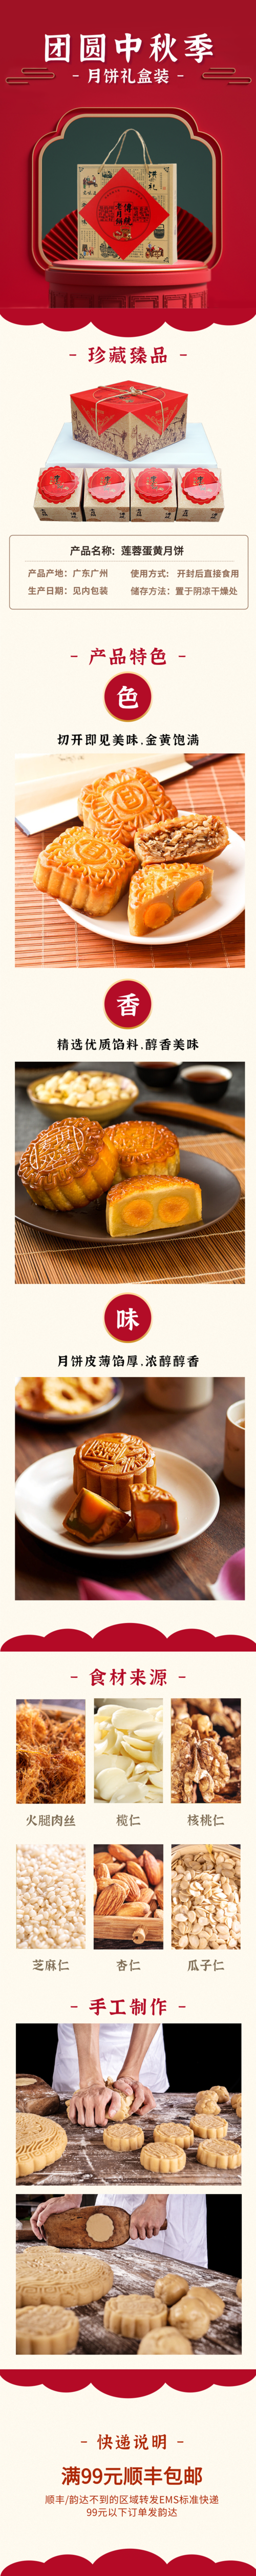 简约中国风中秋节月饼活动促销宝贝详情页